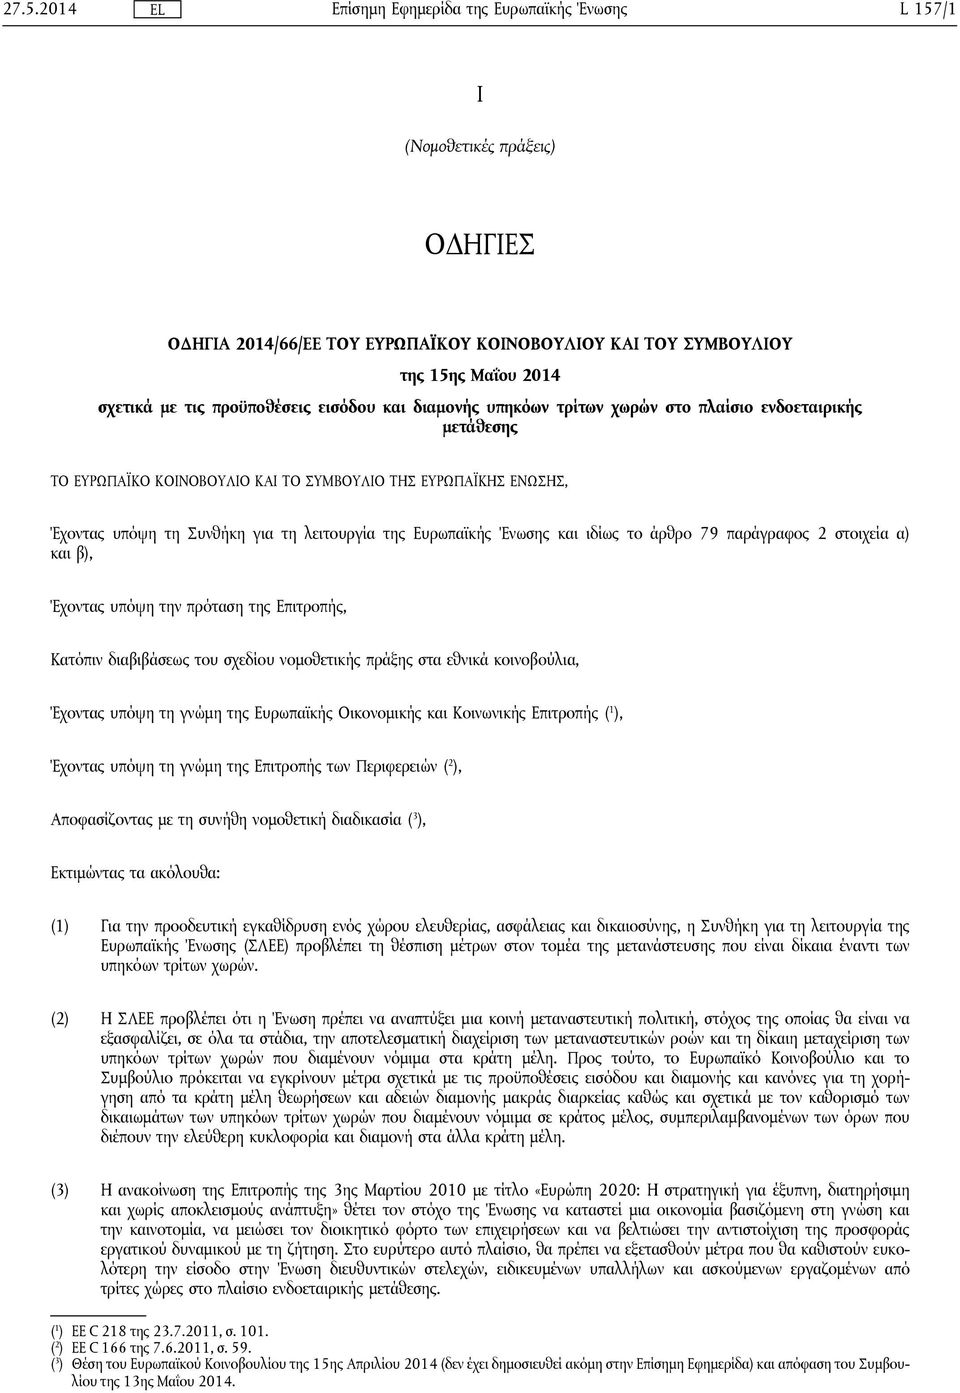 παράγραφος 2 στοιχεία α) και β), Έχοντας υπόψη την πρόταση της Επιτροπής, Κατόπιν διαβιβάσεως του σχεδίου νομοθετικής πράξης στα εθνικά κοινοβούλια, Έχοντας υπόψη τη γνώμη της Ευρωπαϊκής Οικονομικής